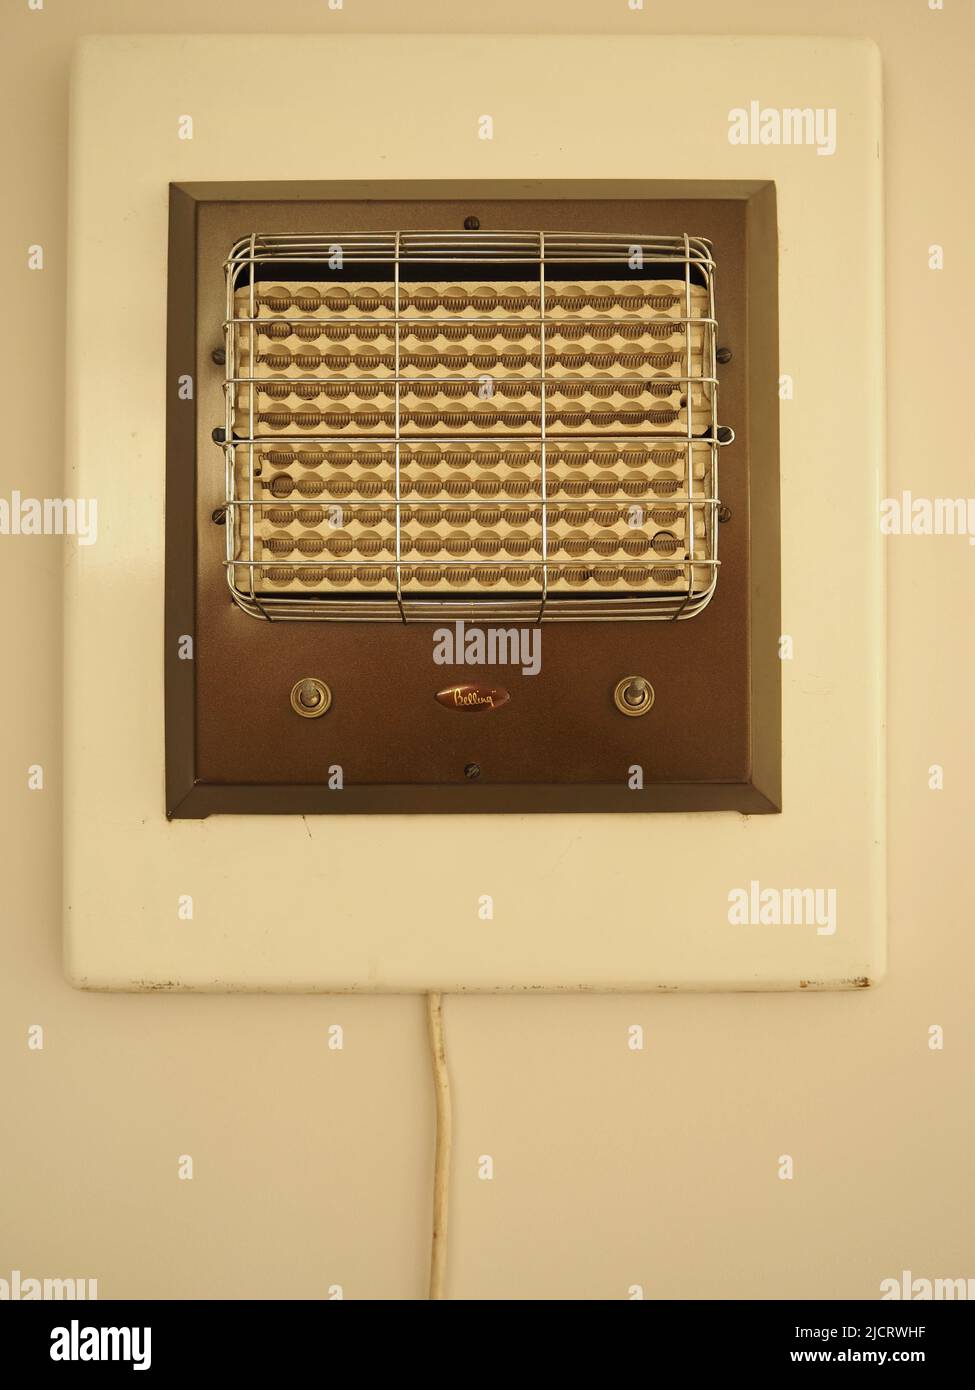 Riscaldatore elettrico Belling plug-in vintage dual Control montato a parete 1950s o 1960s Foto Stock